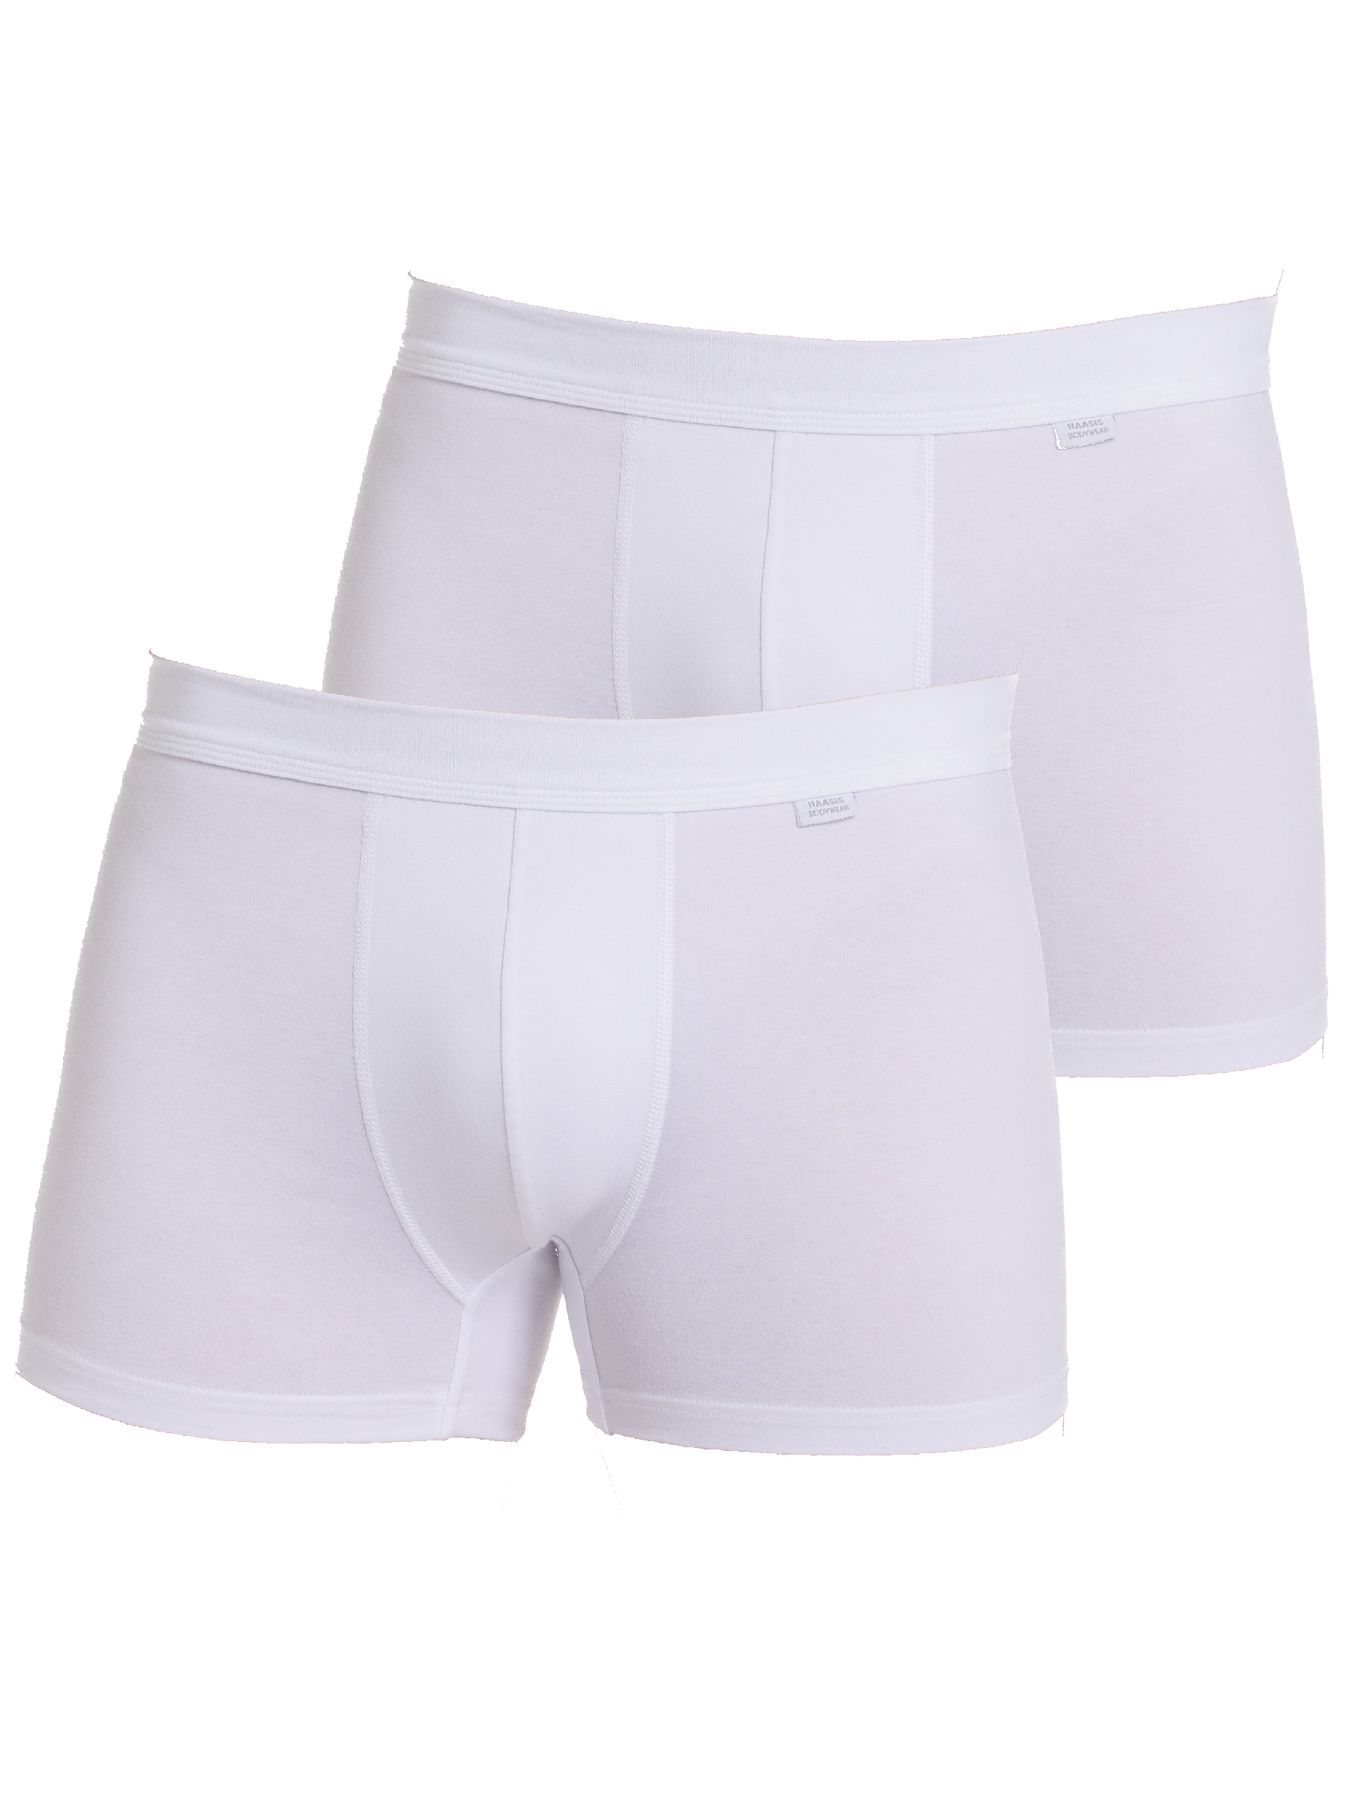 Боксеры Haasis Bodywear 2er-Set: Pants, белый фото